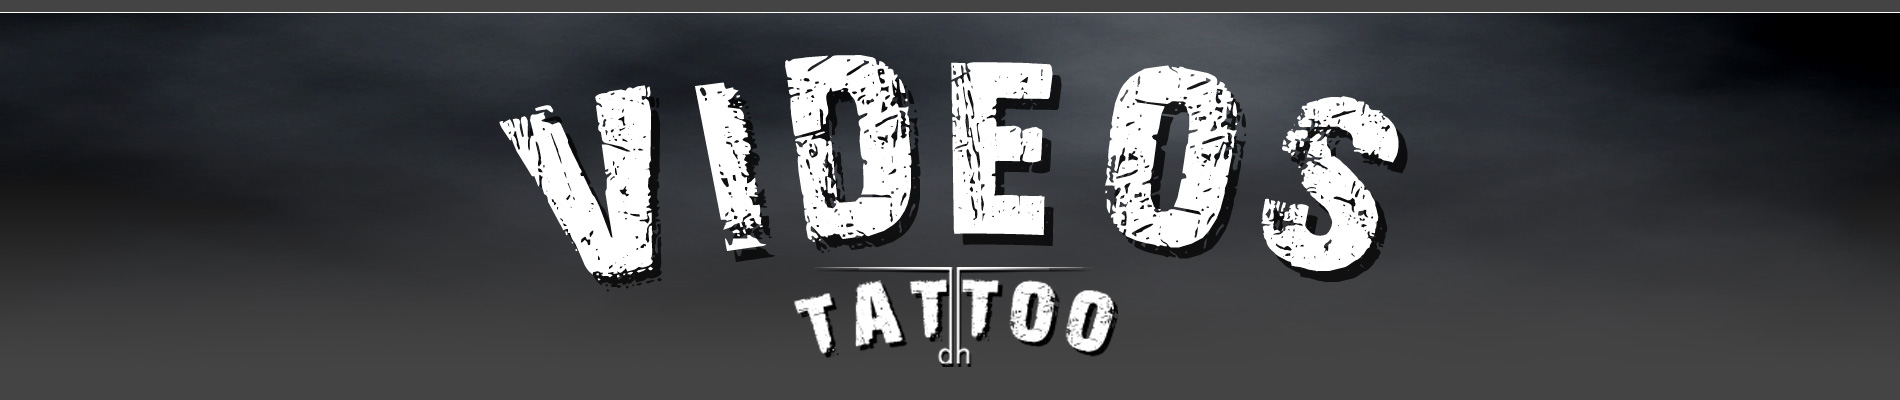 videos dh tattoo